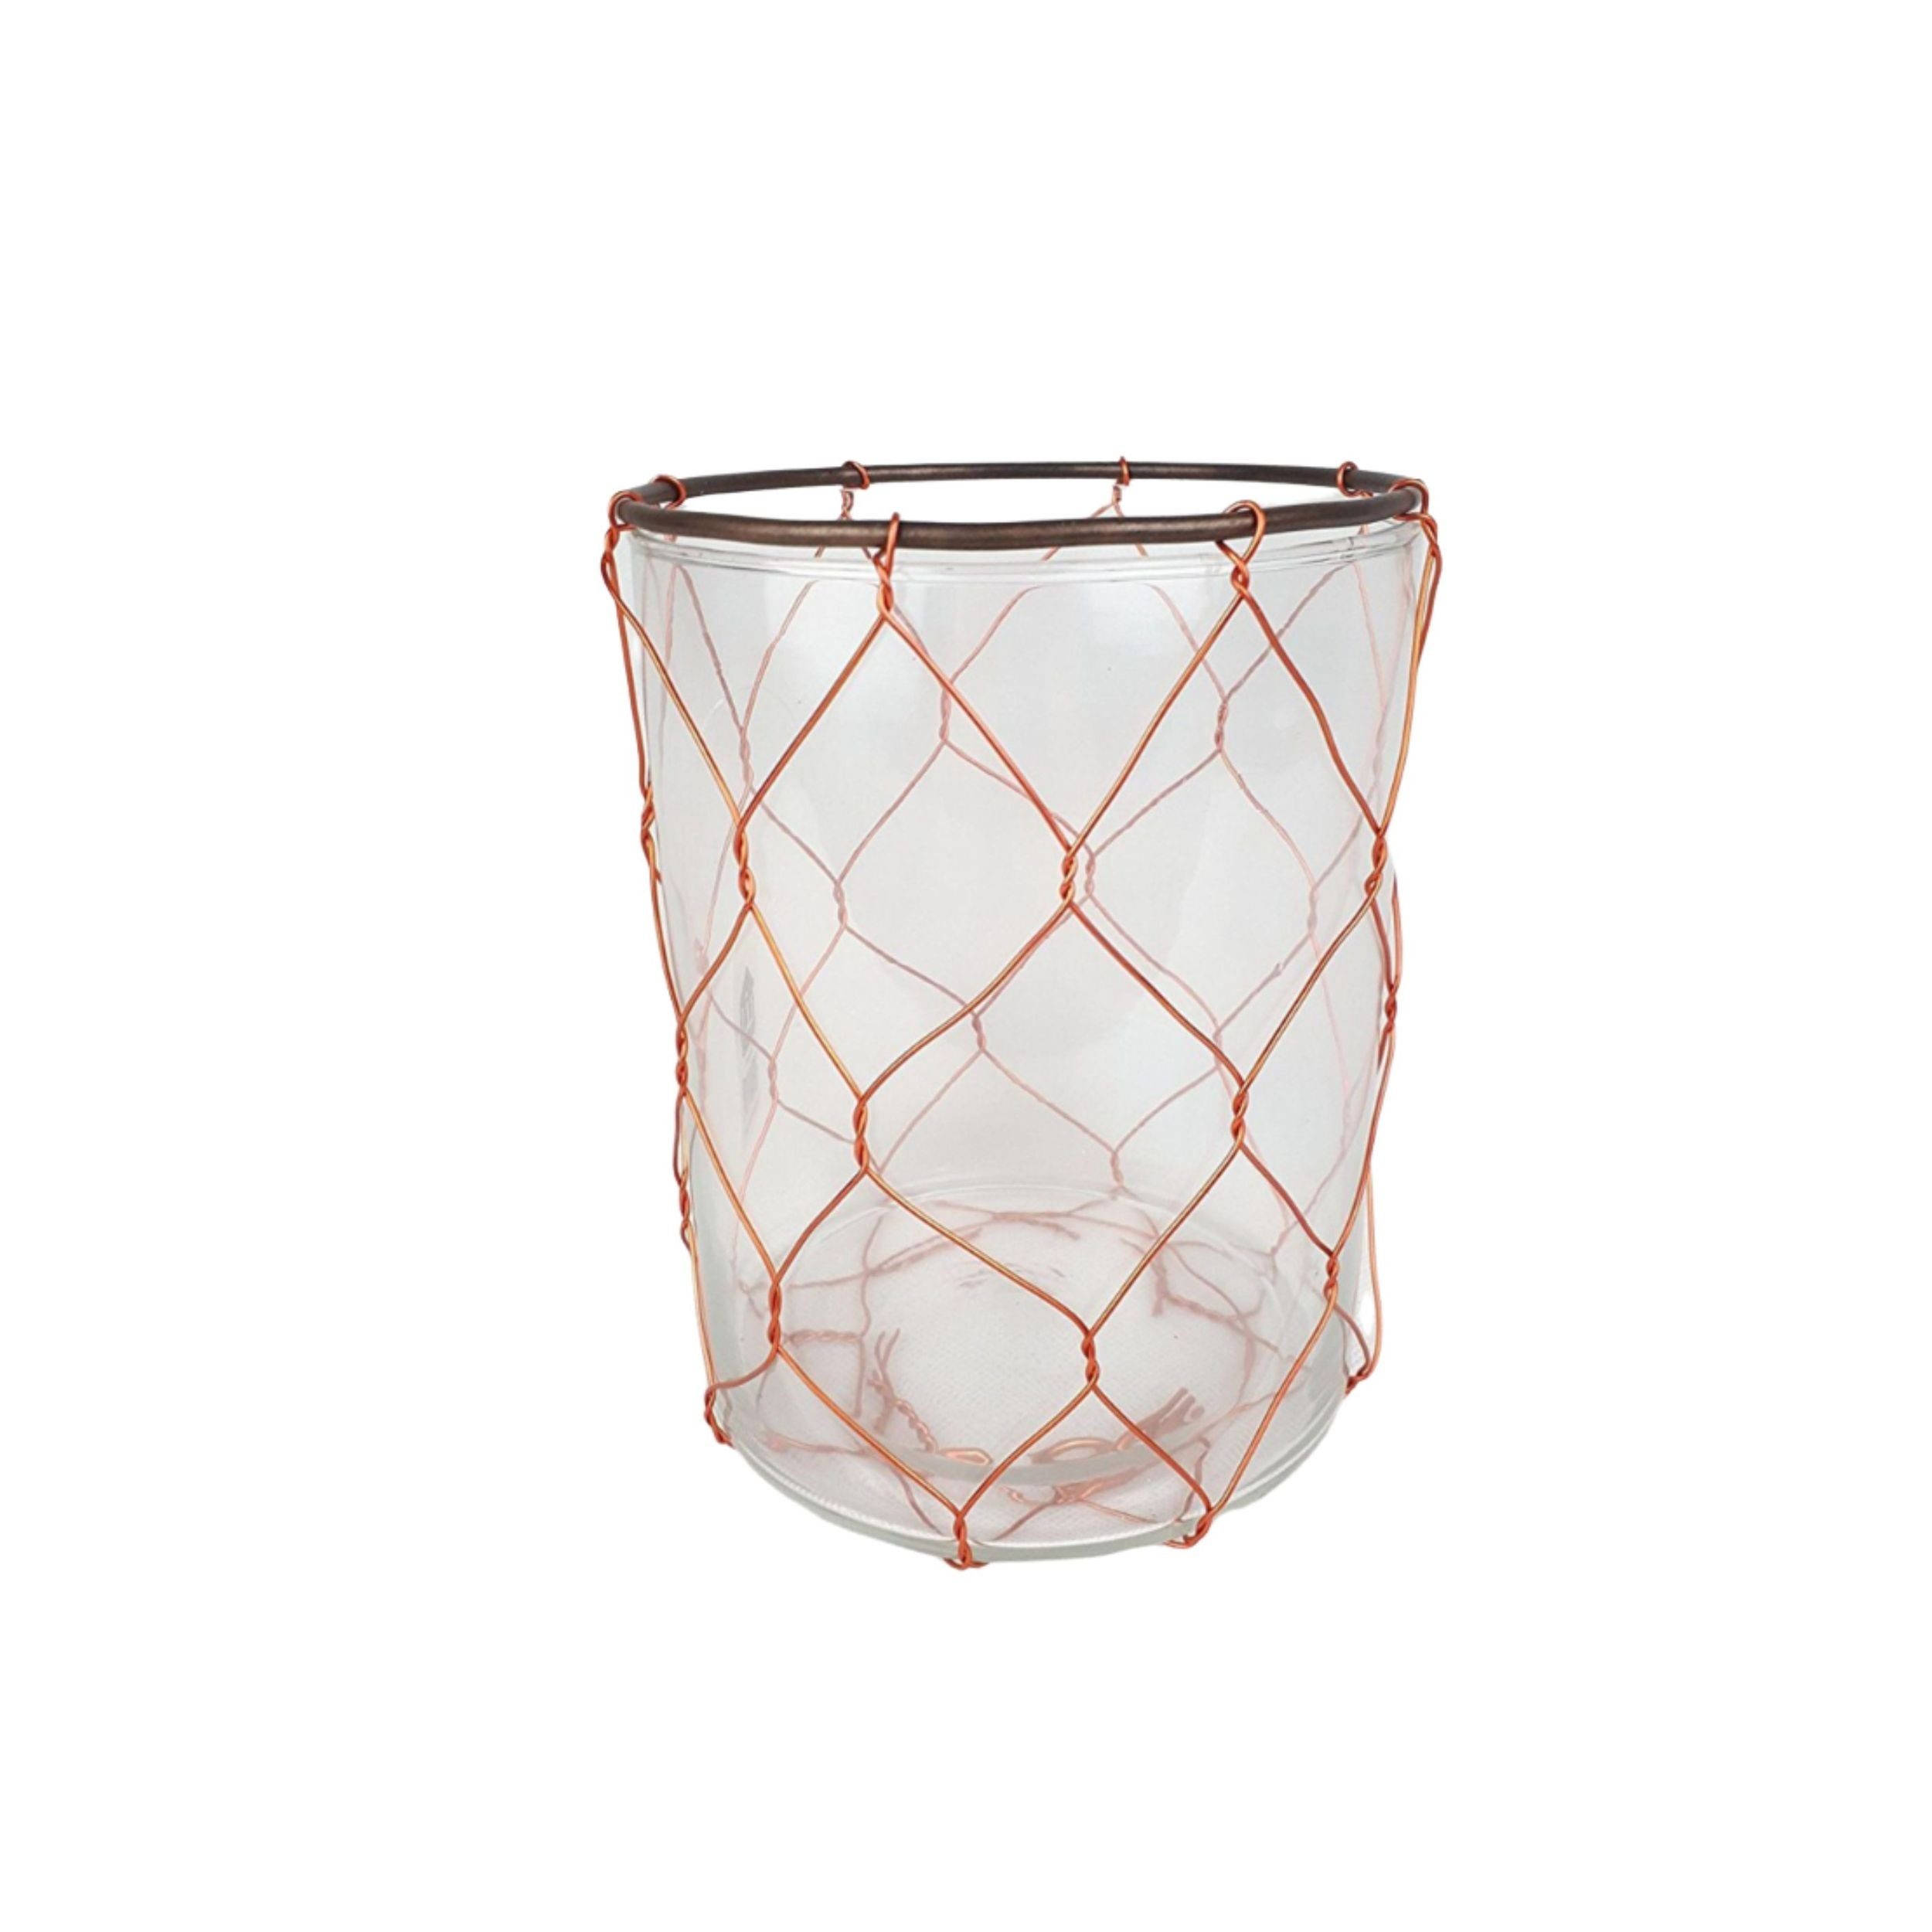 DekoTown Windlicht Industrial Style Glas Windlicht mit Kupferdraht 16cm | Windlichter